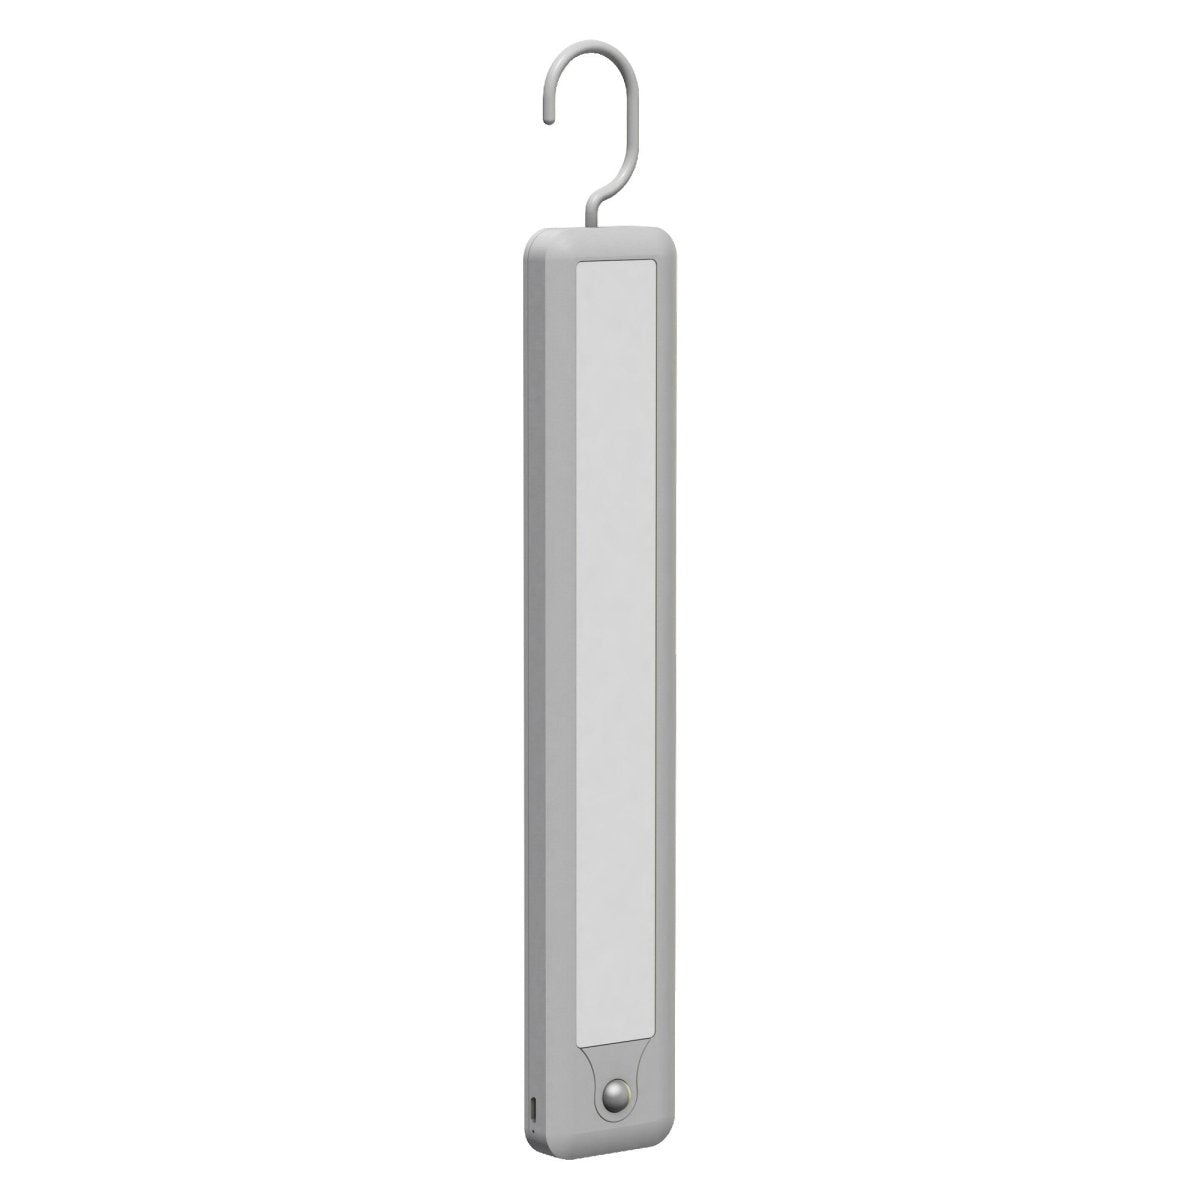 Mobilna lampa LED do szafy z wieszakiem MOBILE HANGER USB - eshop LEDVANCE 4058075504363